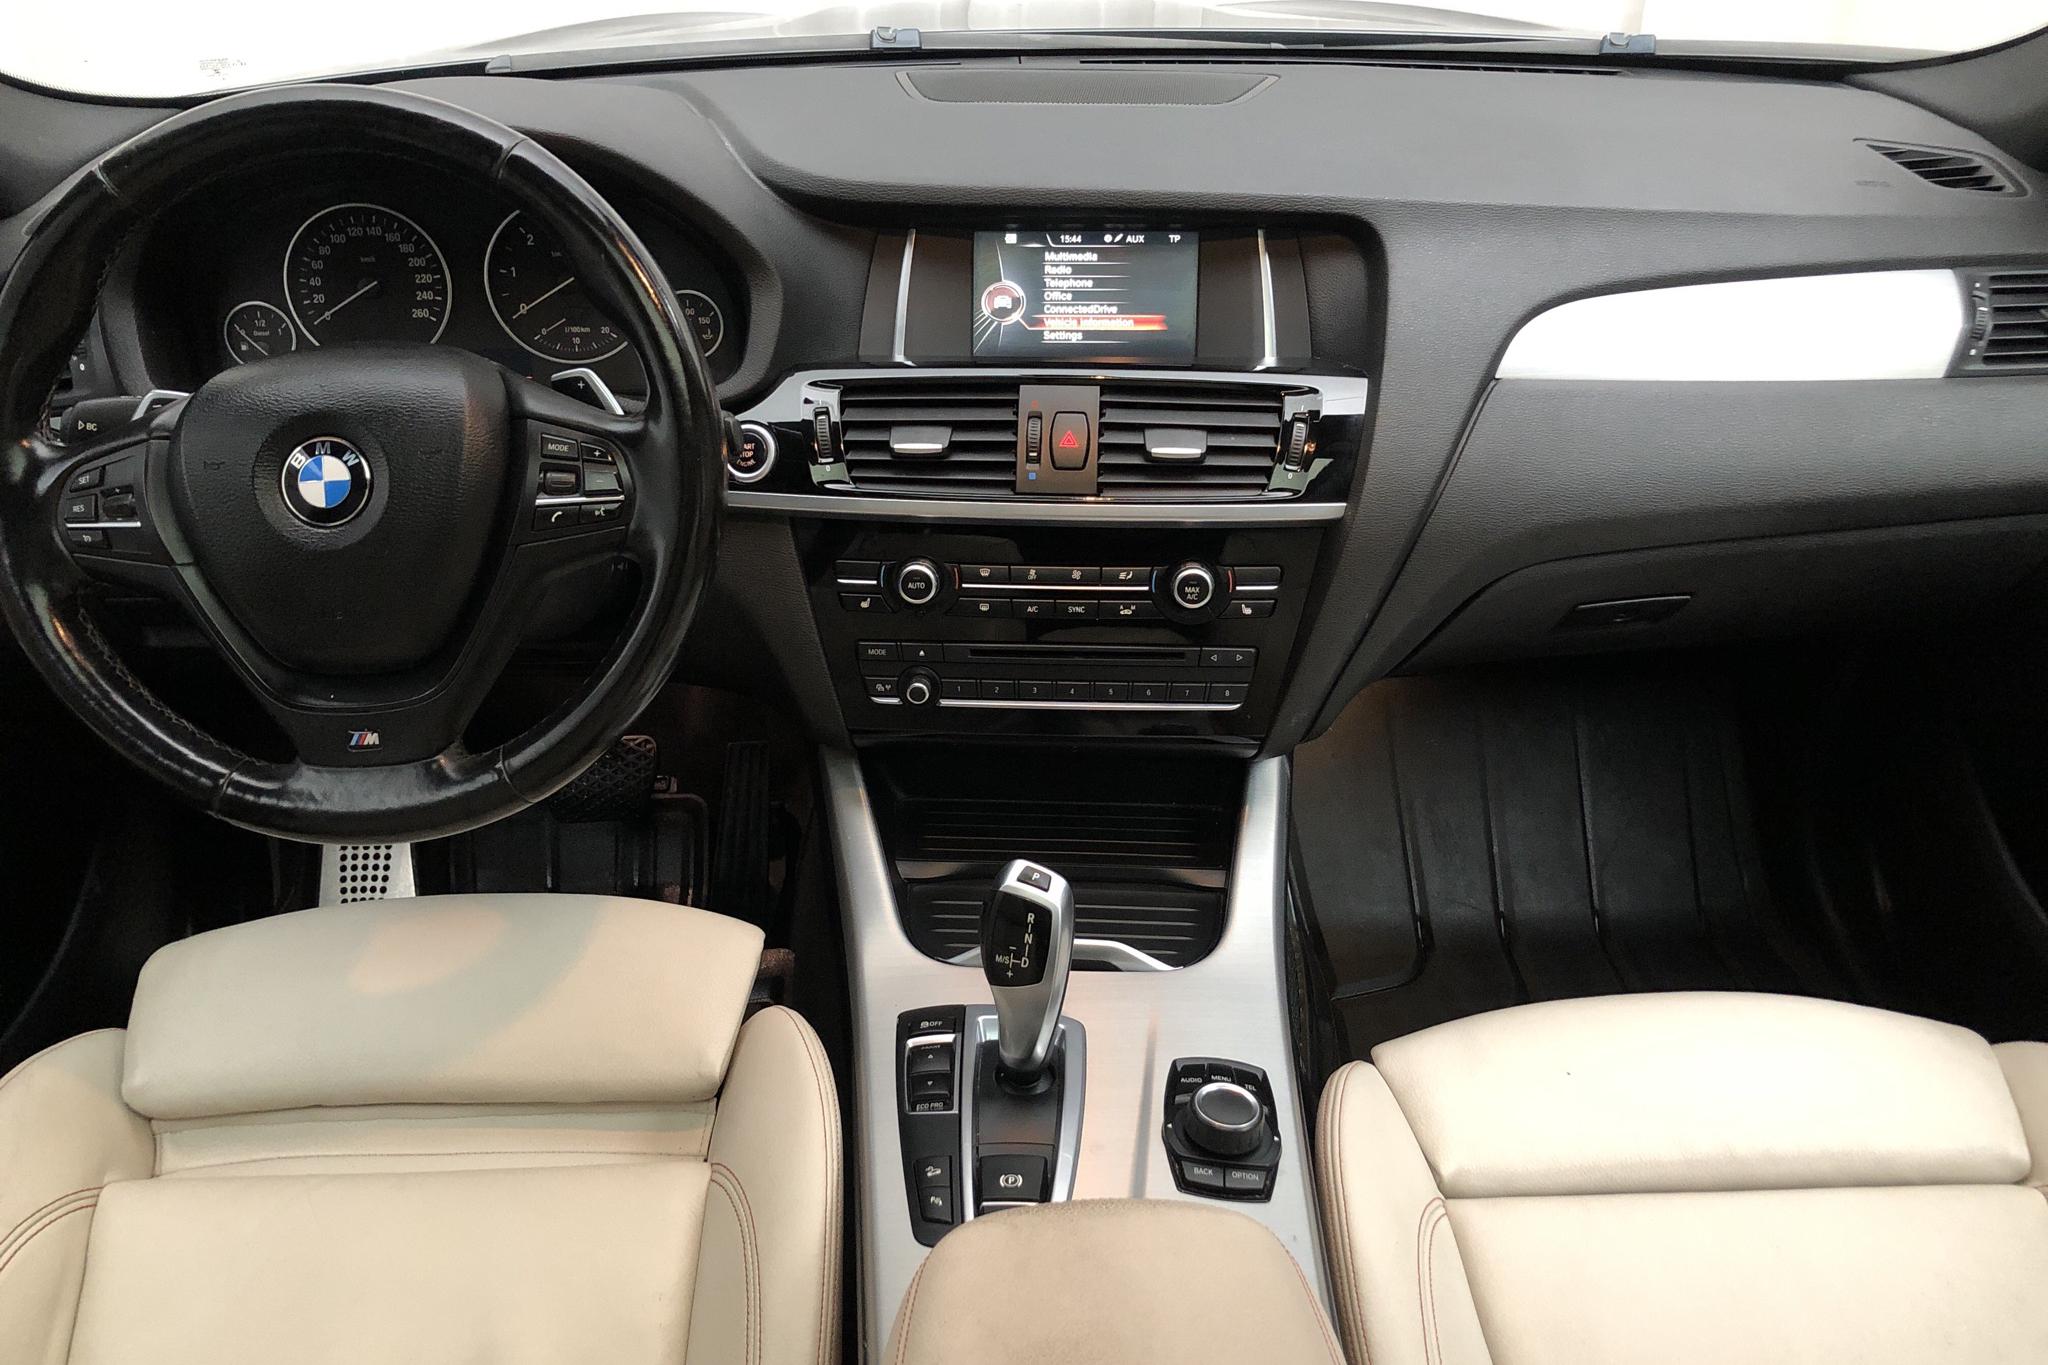 BMW X4 xDrive 20d, F26 (190hk) - 15 775 mil - Automat - svart - 2015